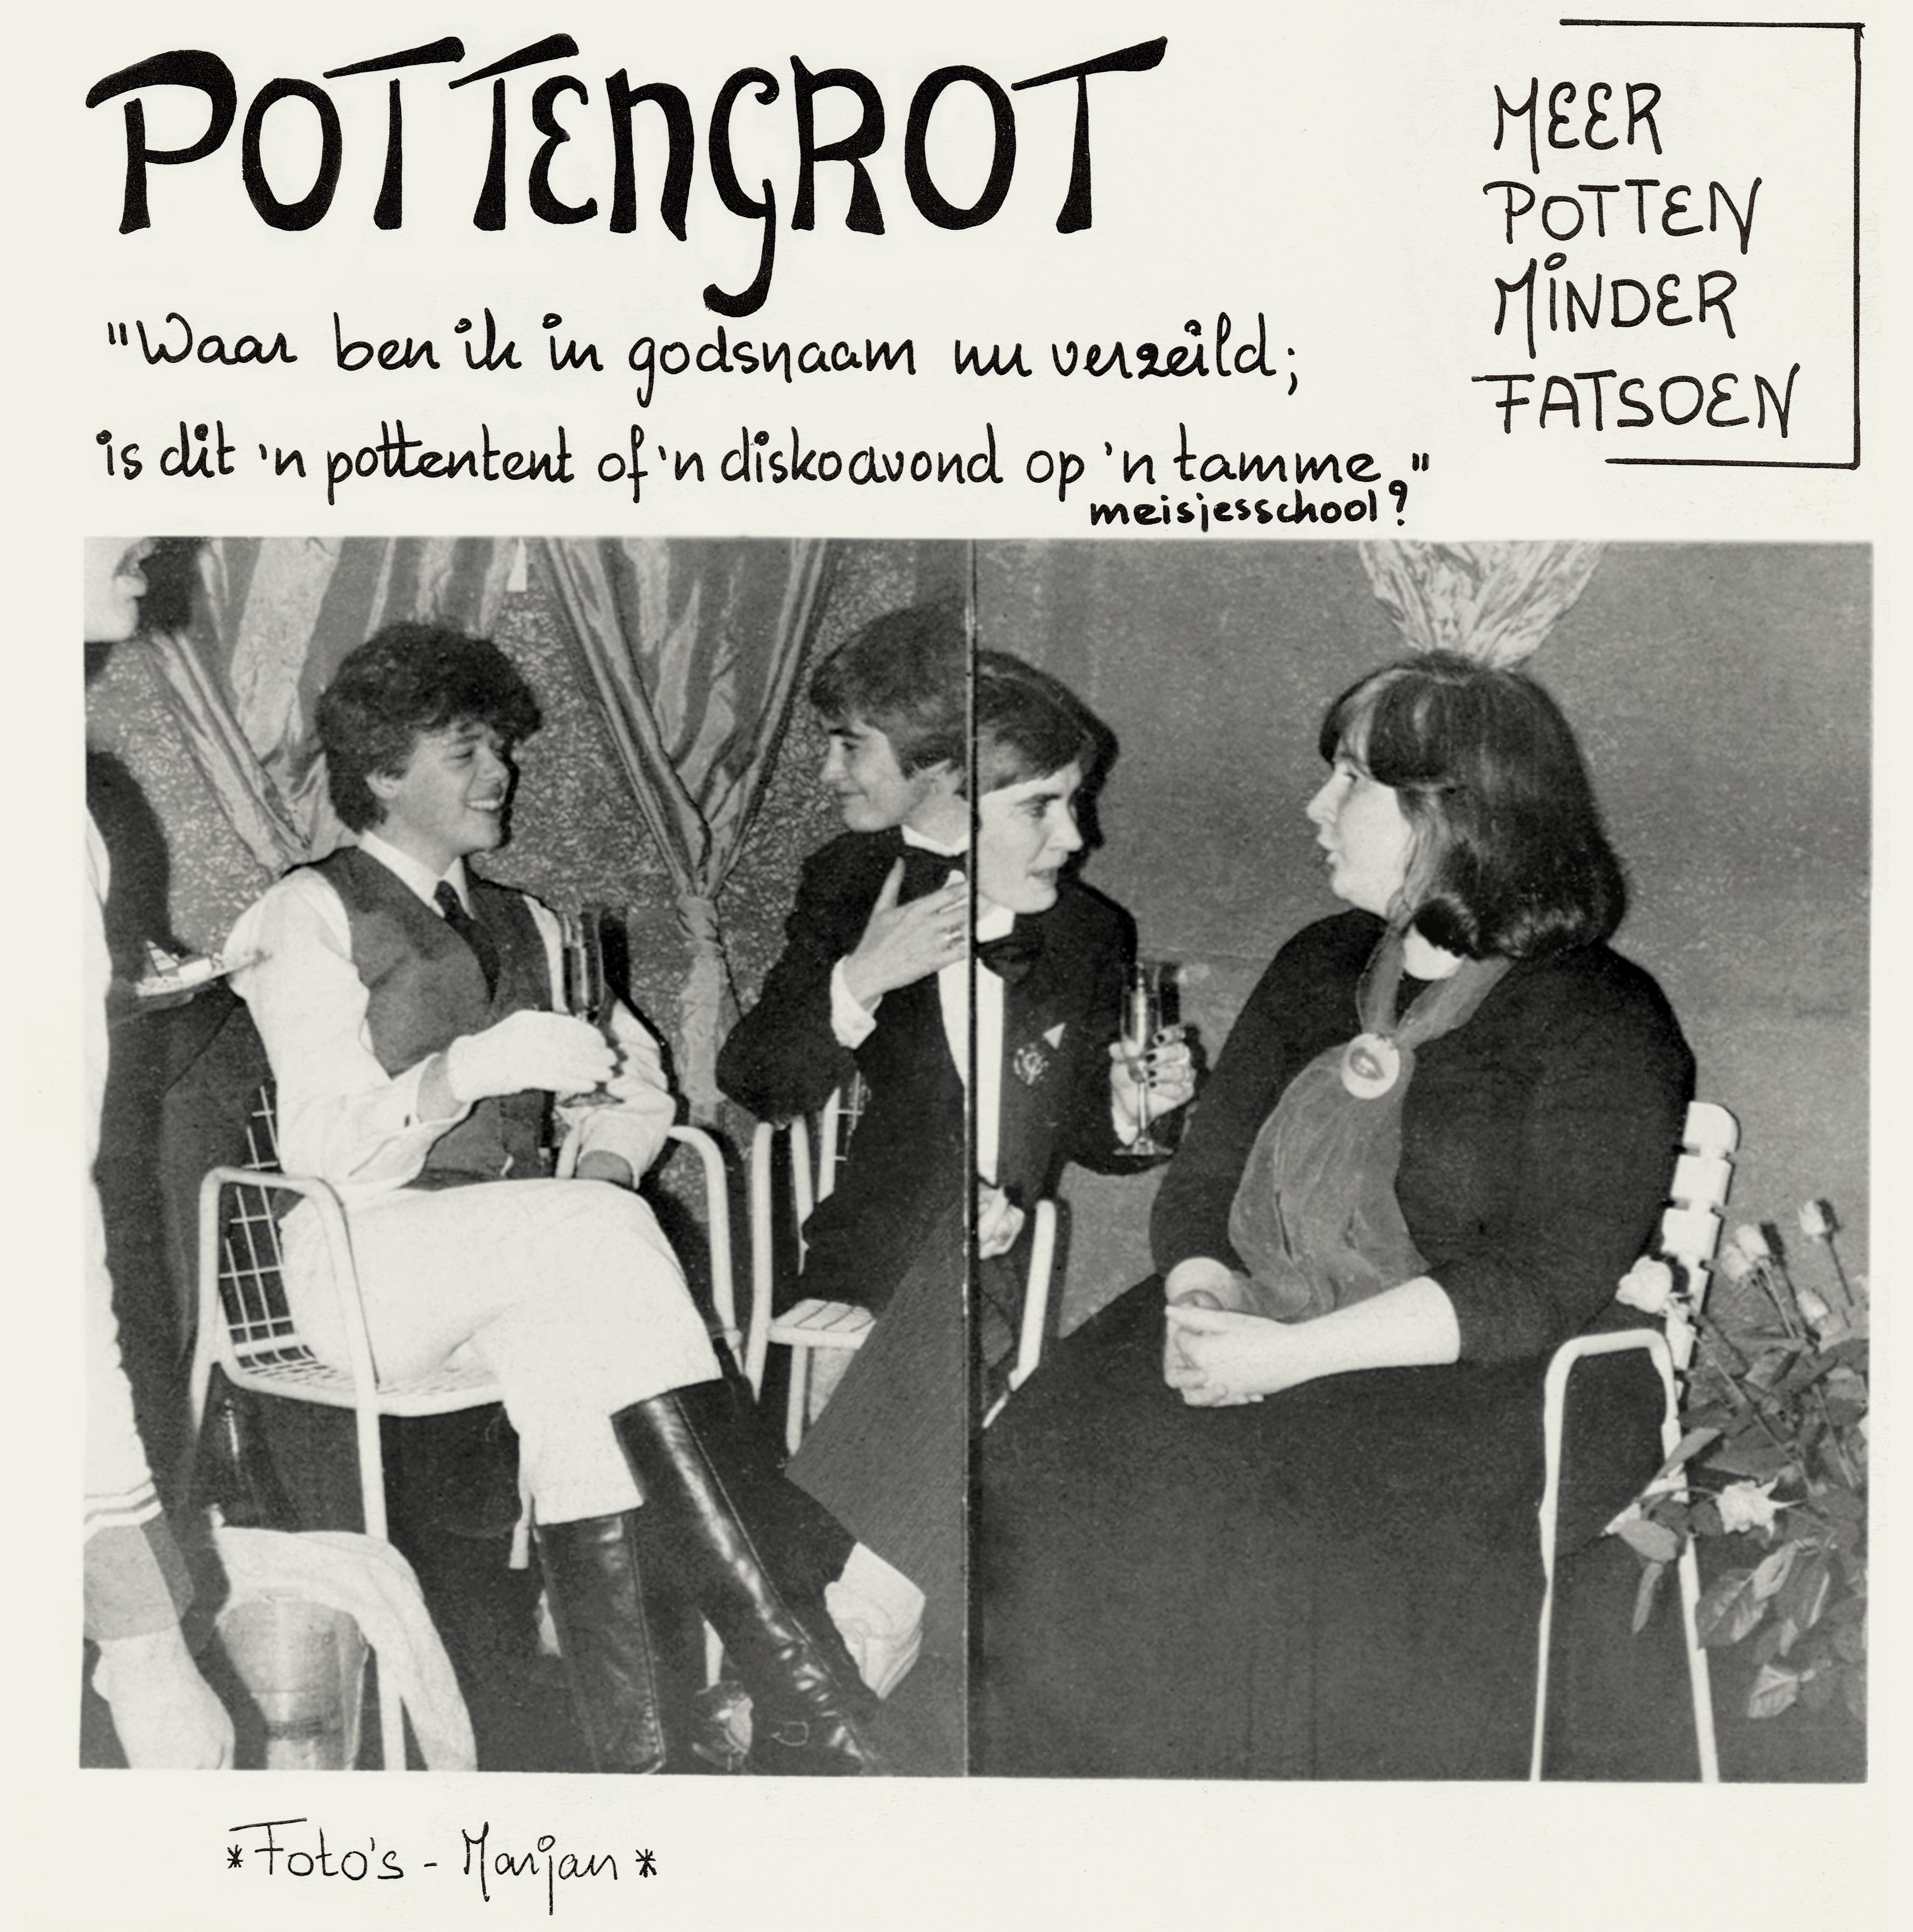 1980-pottengrot-in-kelder-caf-de-plak_24641155926_o